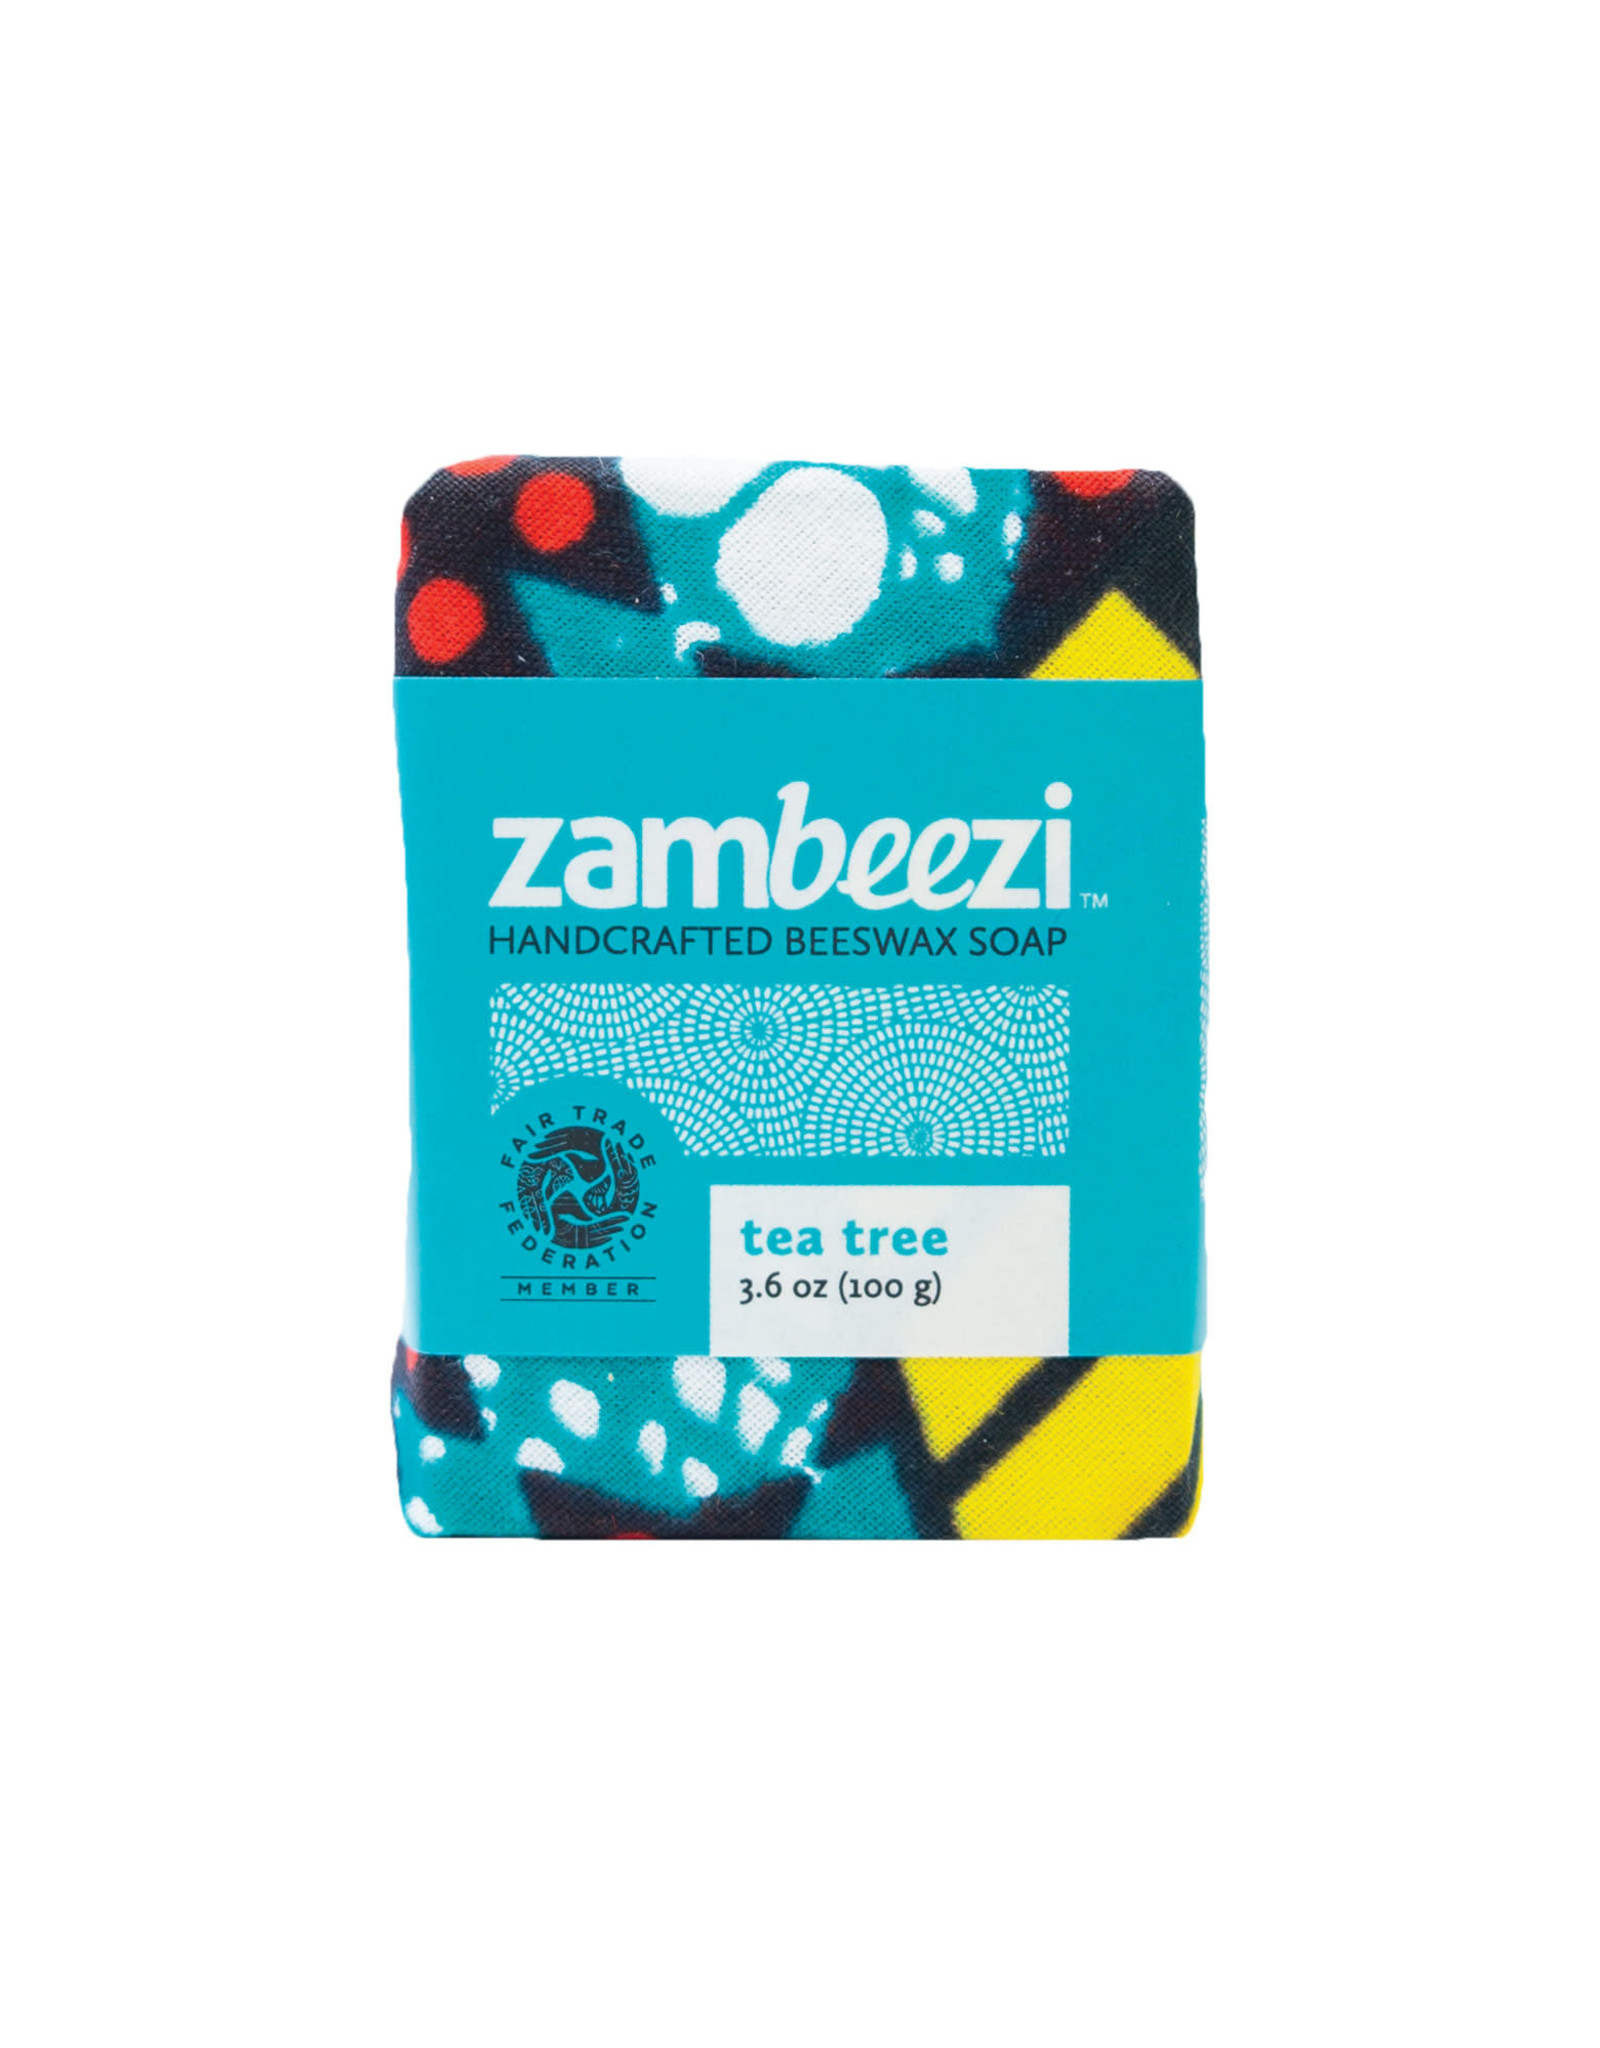 Tea Tree Beeswax Soap, 100g, Zambia